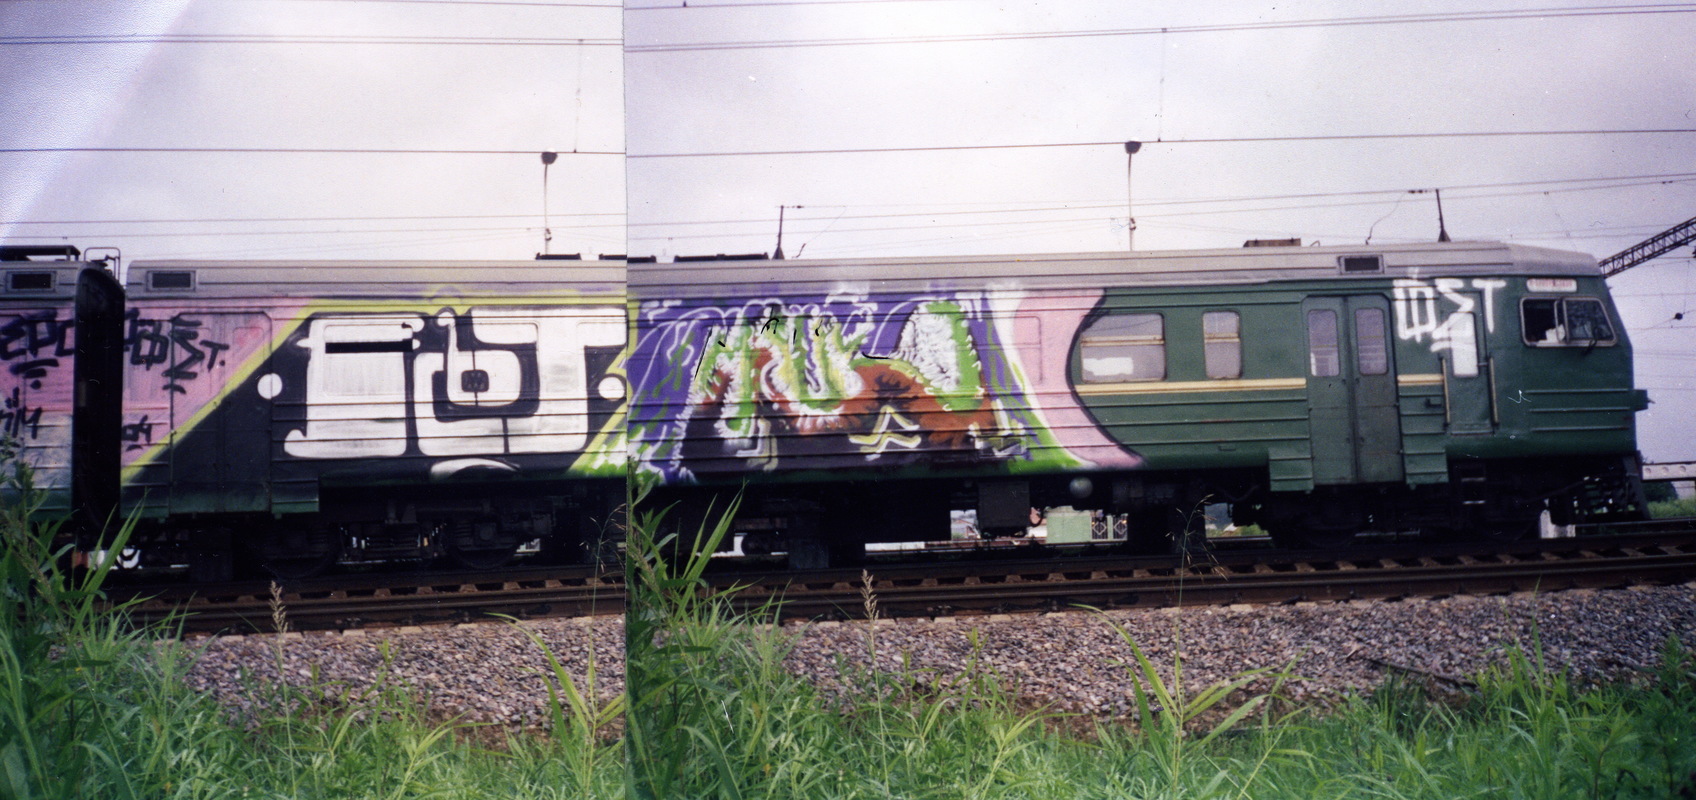 Вагон поезда, расписанный художниками Fet и Mouke